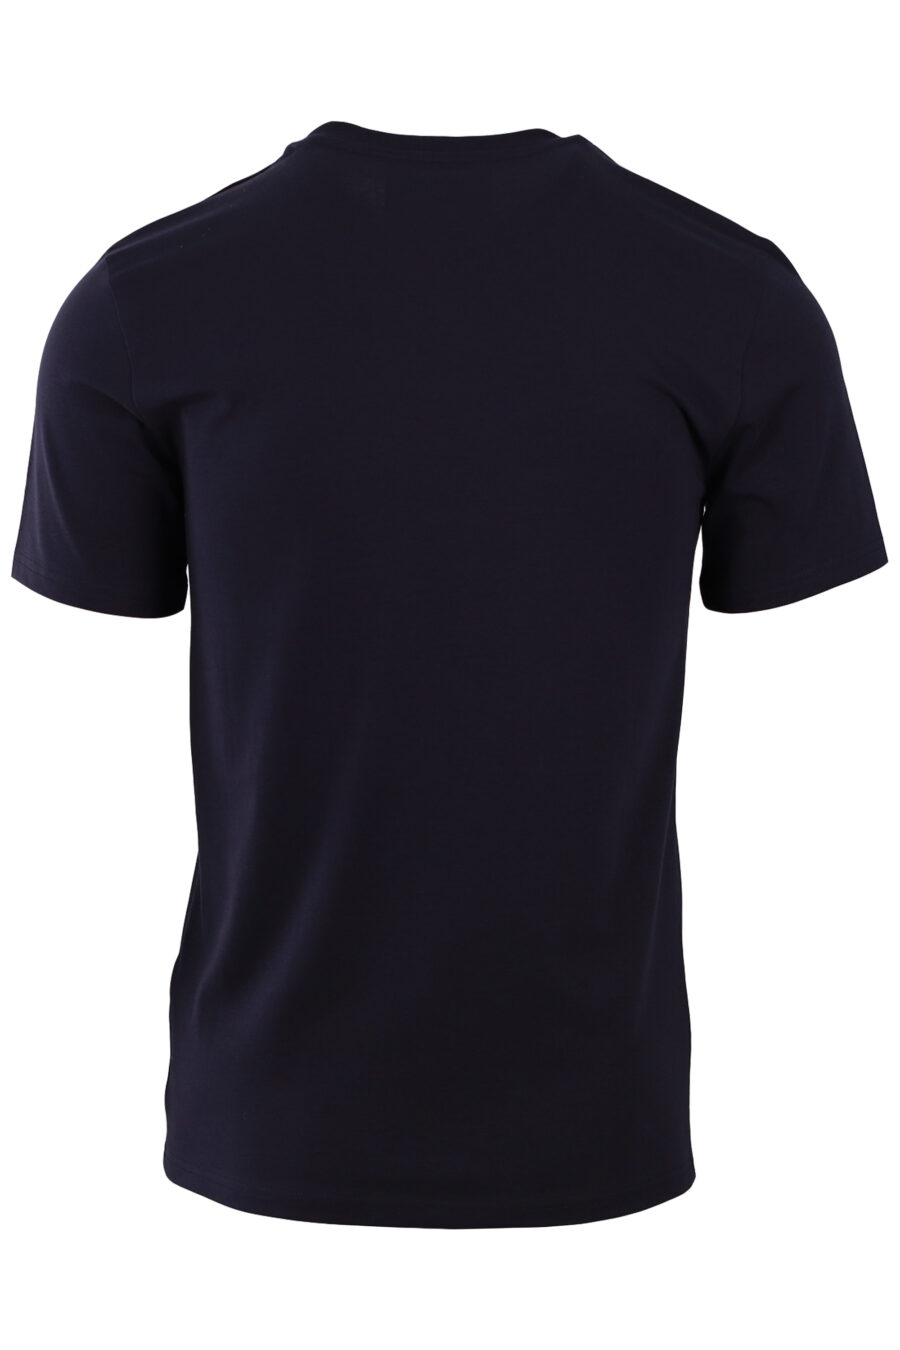 Tee-shirt noir avec maxilogue blanc - IMG 6345